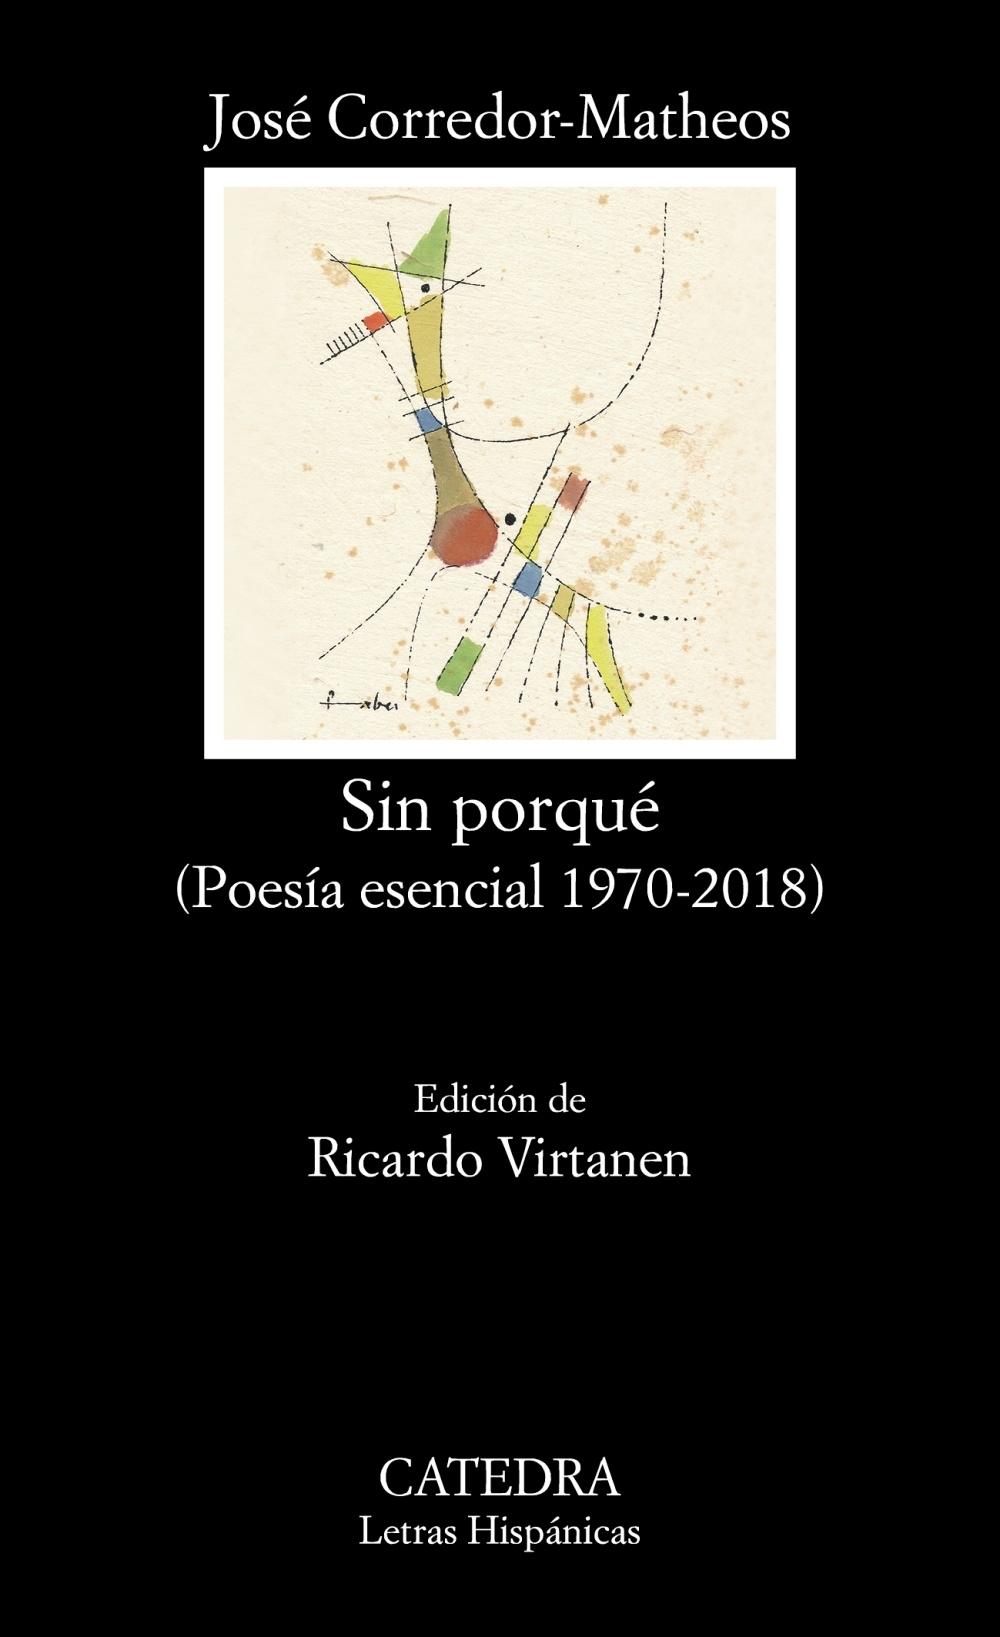 Sin porqué "(Poesía esencial, 1970-2018)". 